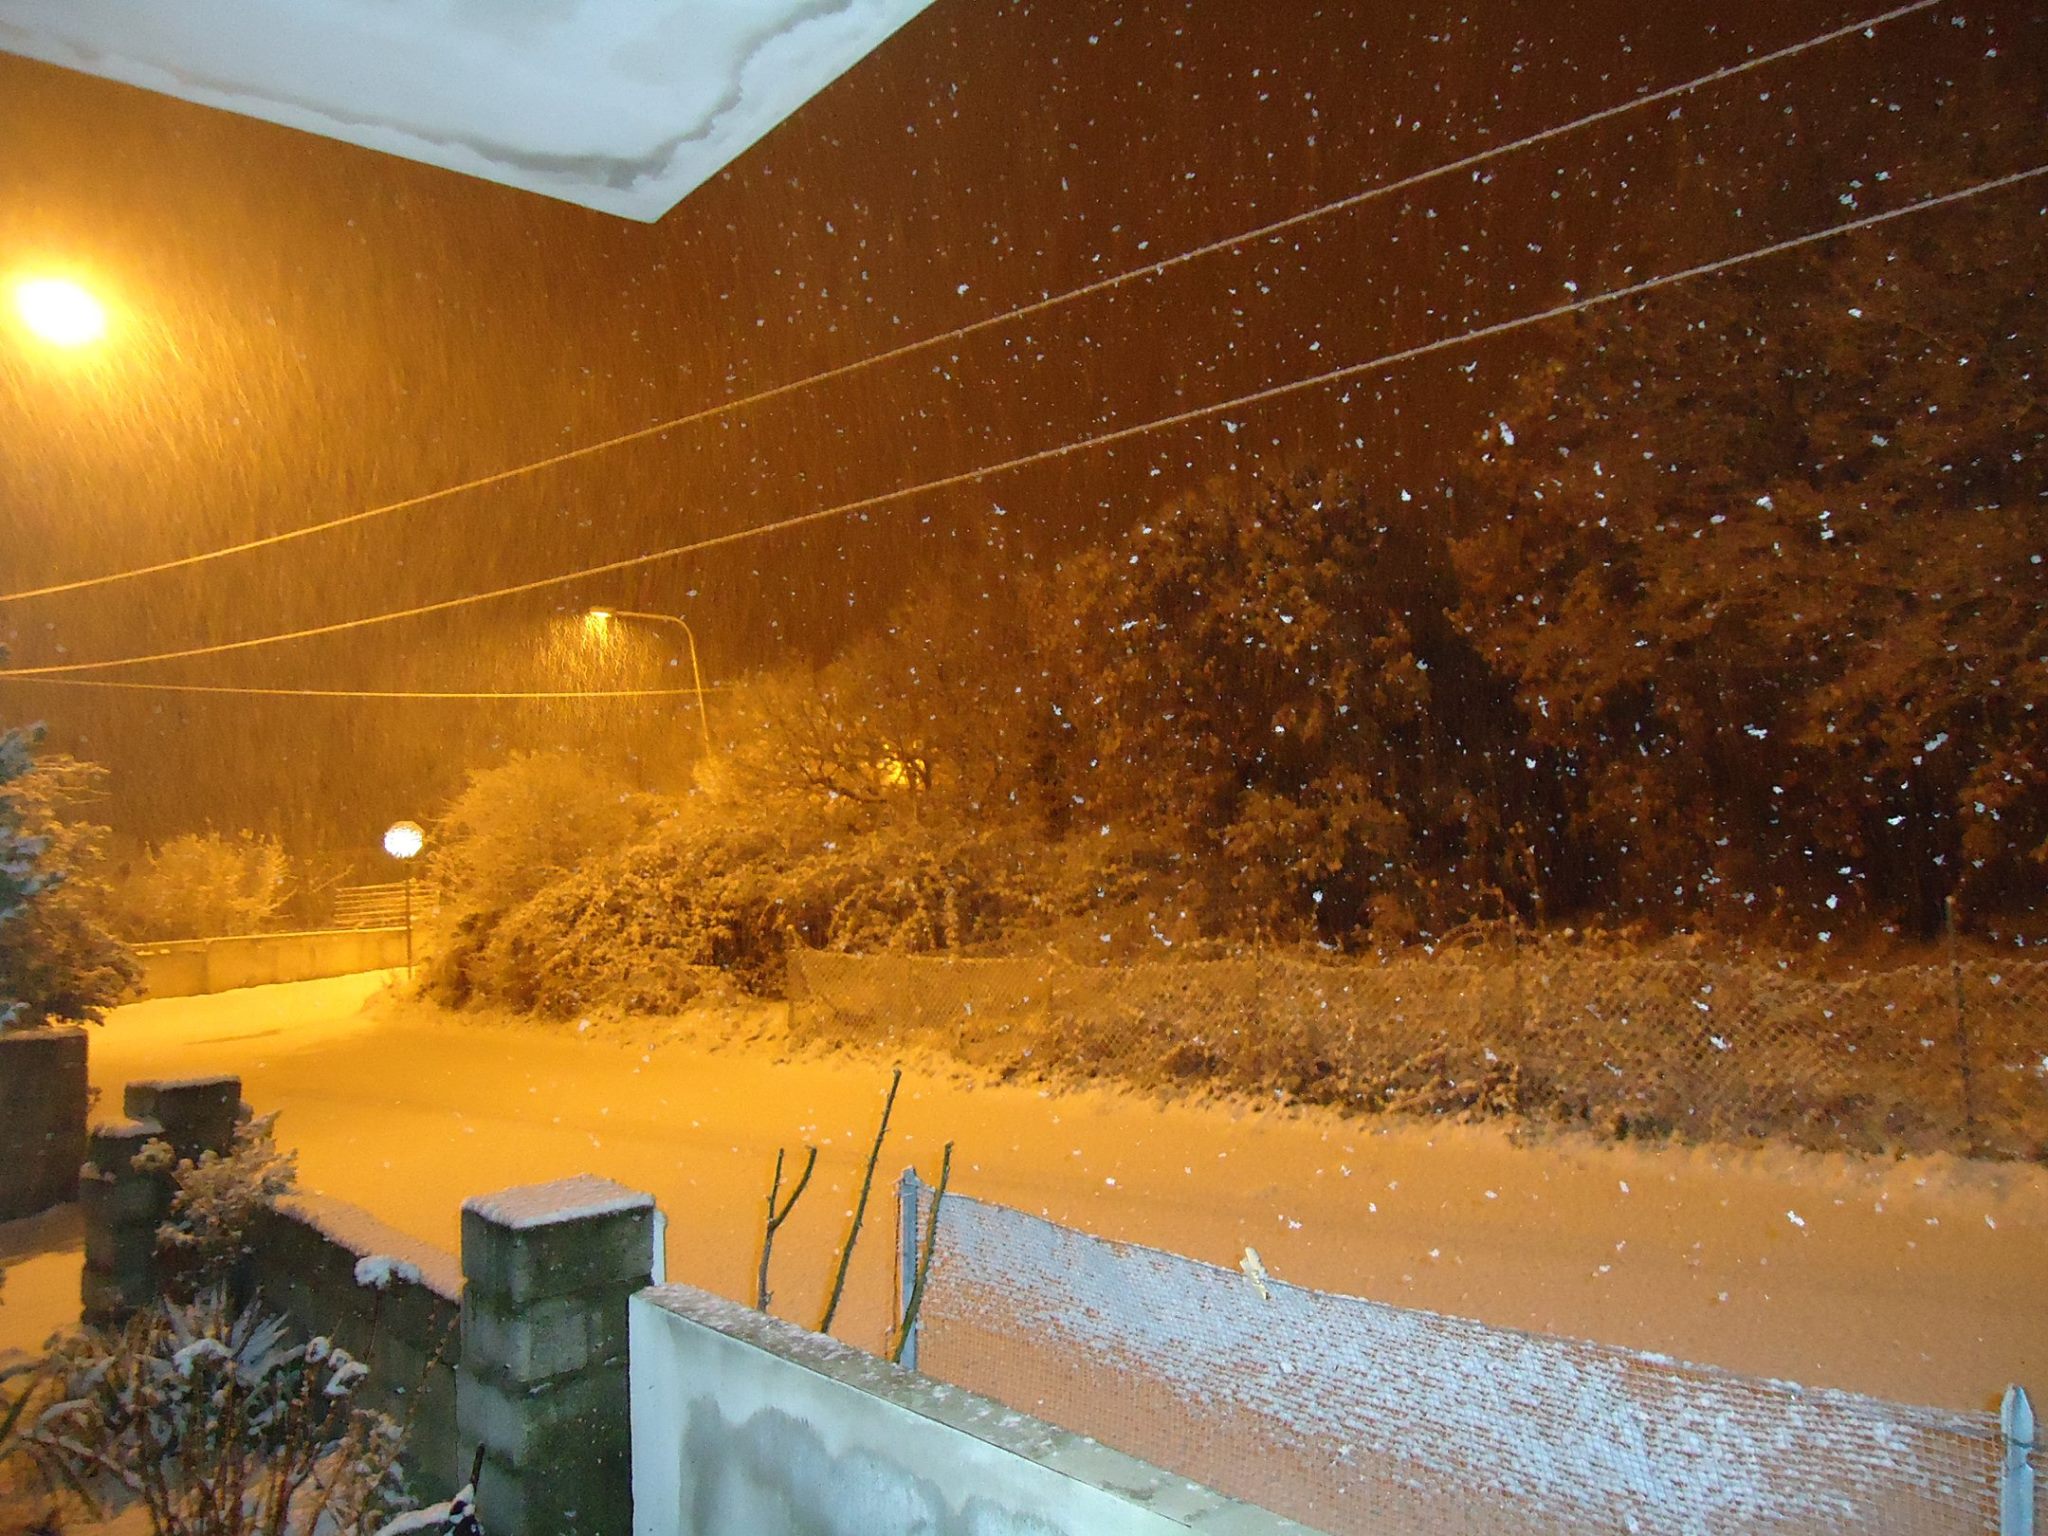 12591788 10205247205770980 562510379 o - Alà dei Sardi, risveglio con neve: abbondante la notte scorsa